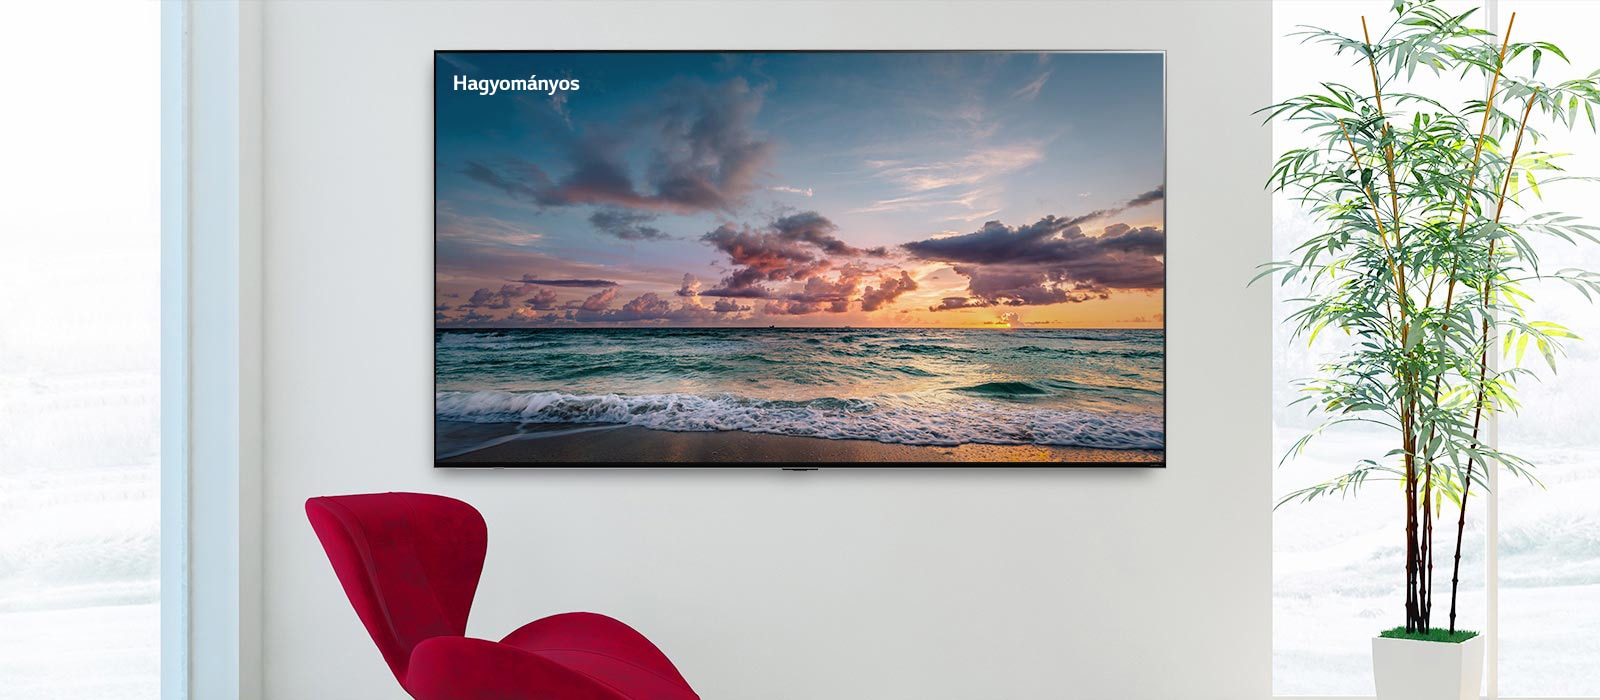 Egy falra rögzített nagyképernyős TV, előtte egy piros szék. A képernyőn egy tengerpart látható, amelyek finoman mosnak a hullámok. Balról jobbra görgetve láthatóvá válik a kép hagyományos LCD képernyőn, valamint egy LG QNED MiniLED képernyőn, mutatva a színkülönbséget.